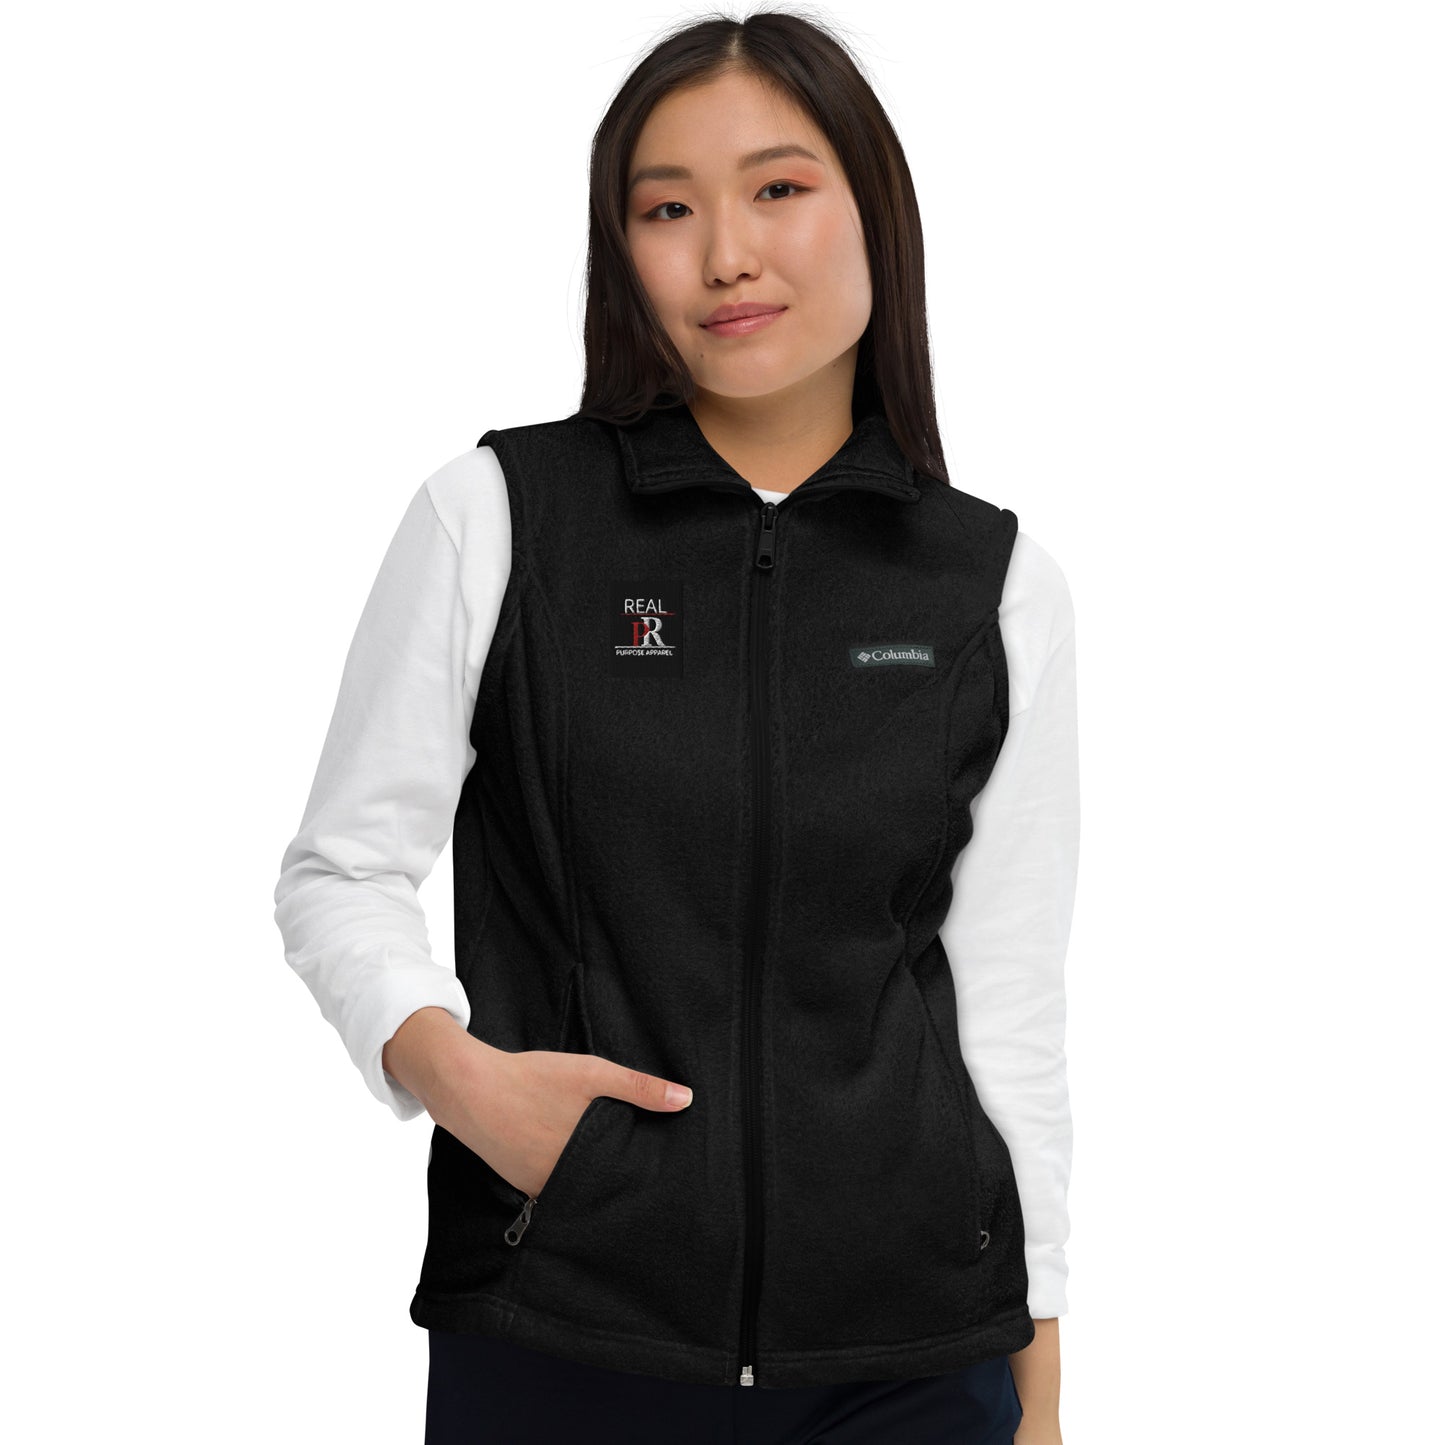 Real Purpose Women’s Columbia fleece vest